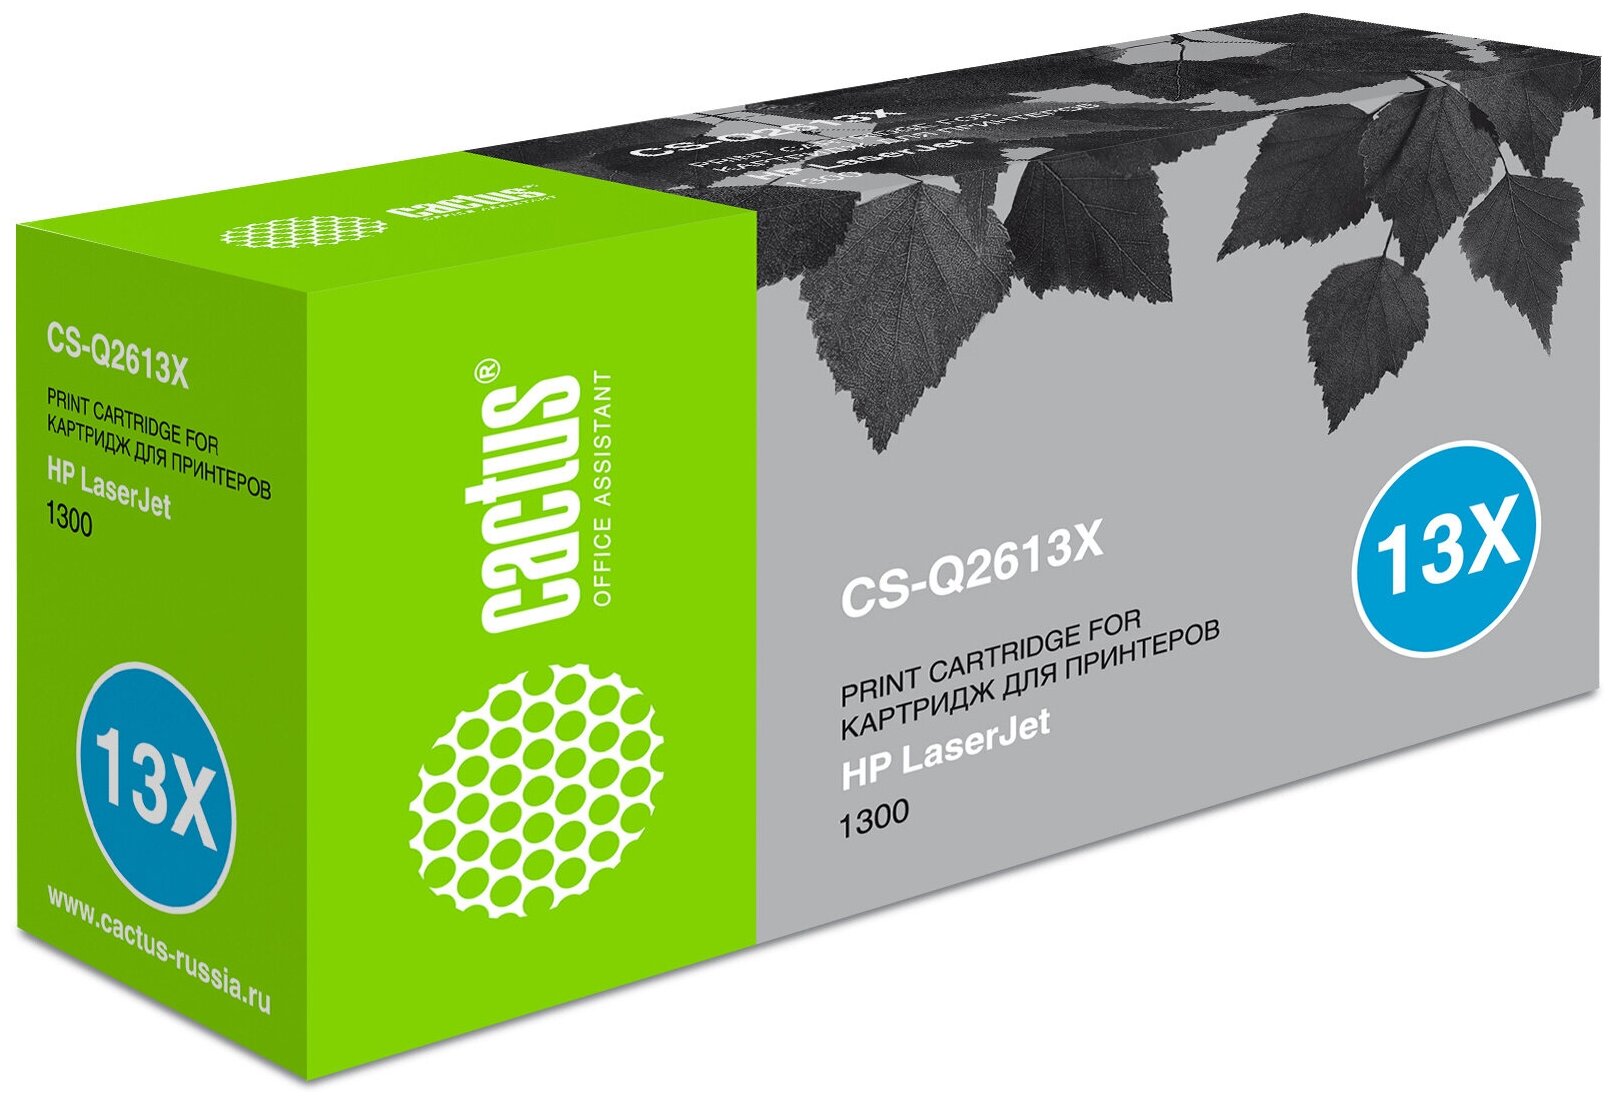 Картридж лазерный Cactus CS-Q2613X черный 4000стр. для HP LJ 13001300N